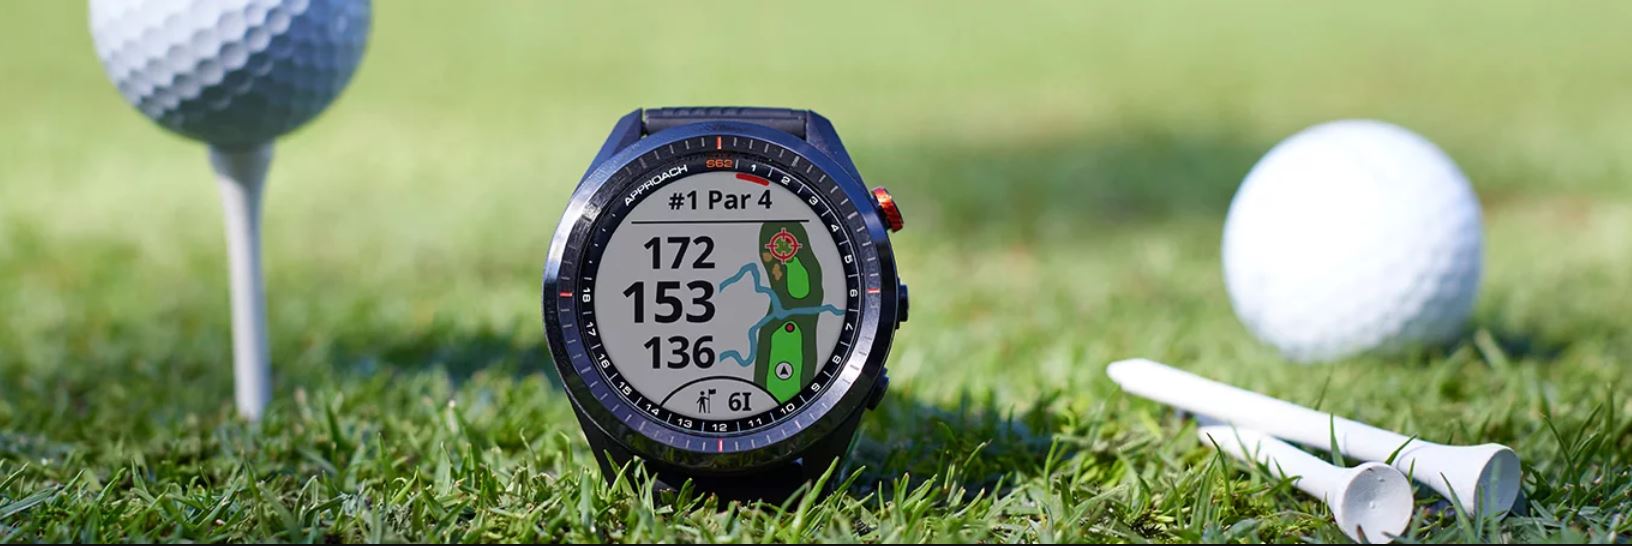 Garmin Approach S12 - Chiếc đồng hồ thông minh cho người chơi golf